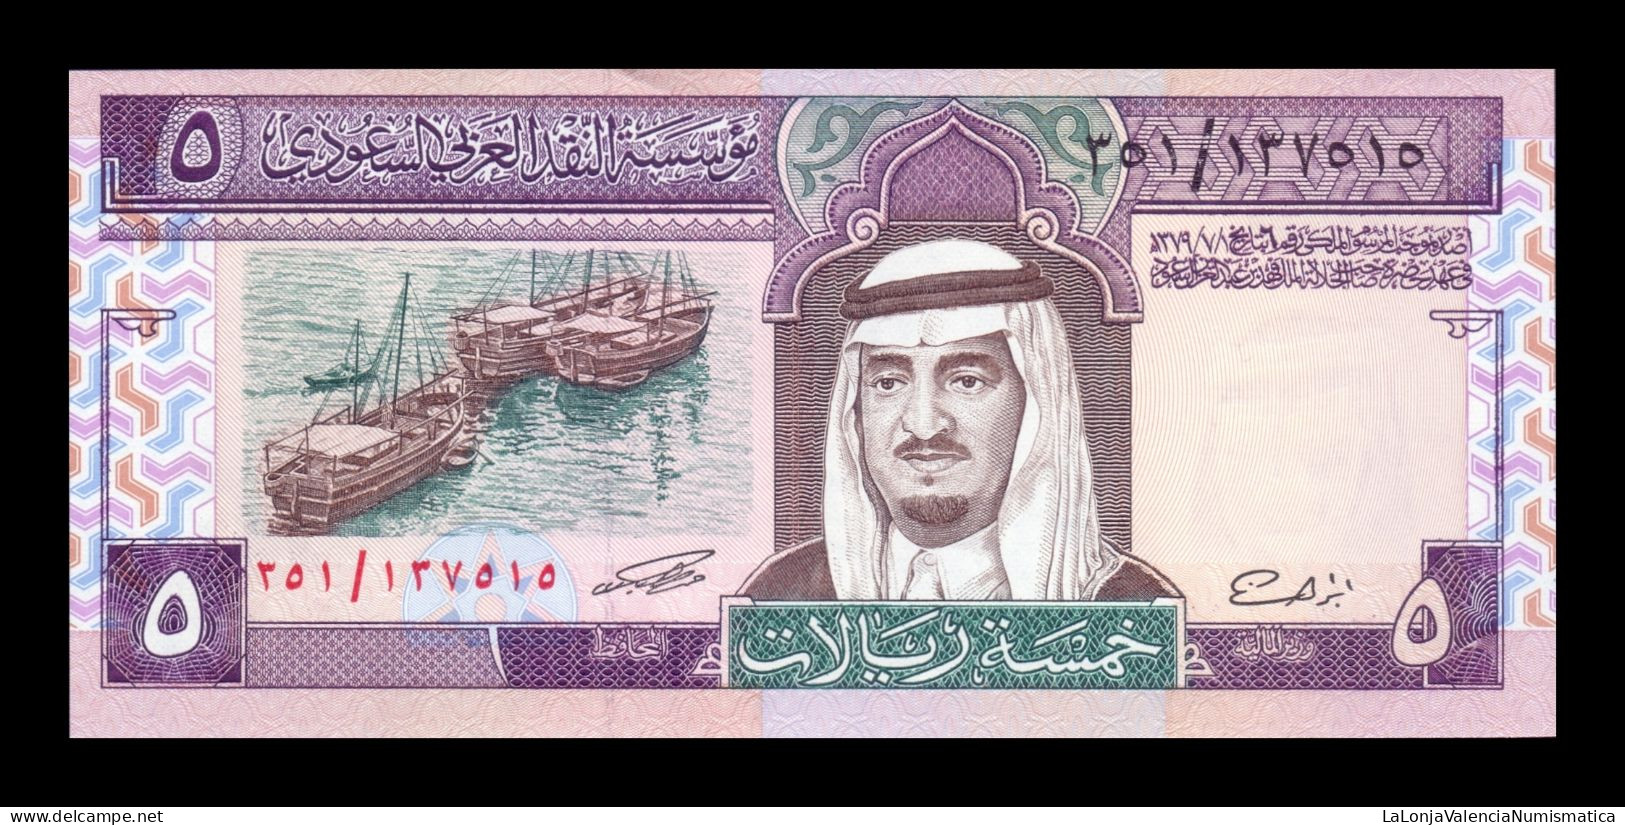 Arabia Saudí 5 Riyals 1983 Pick 22d Sc Unc - Saudi-Arabien